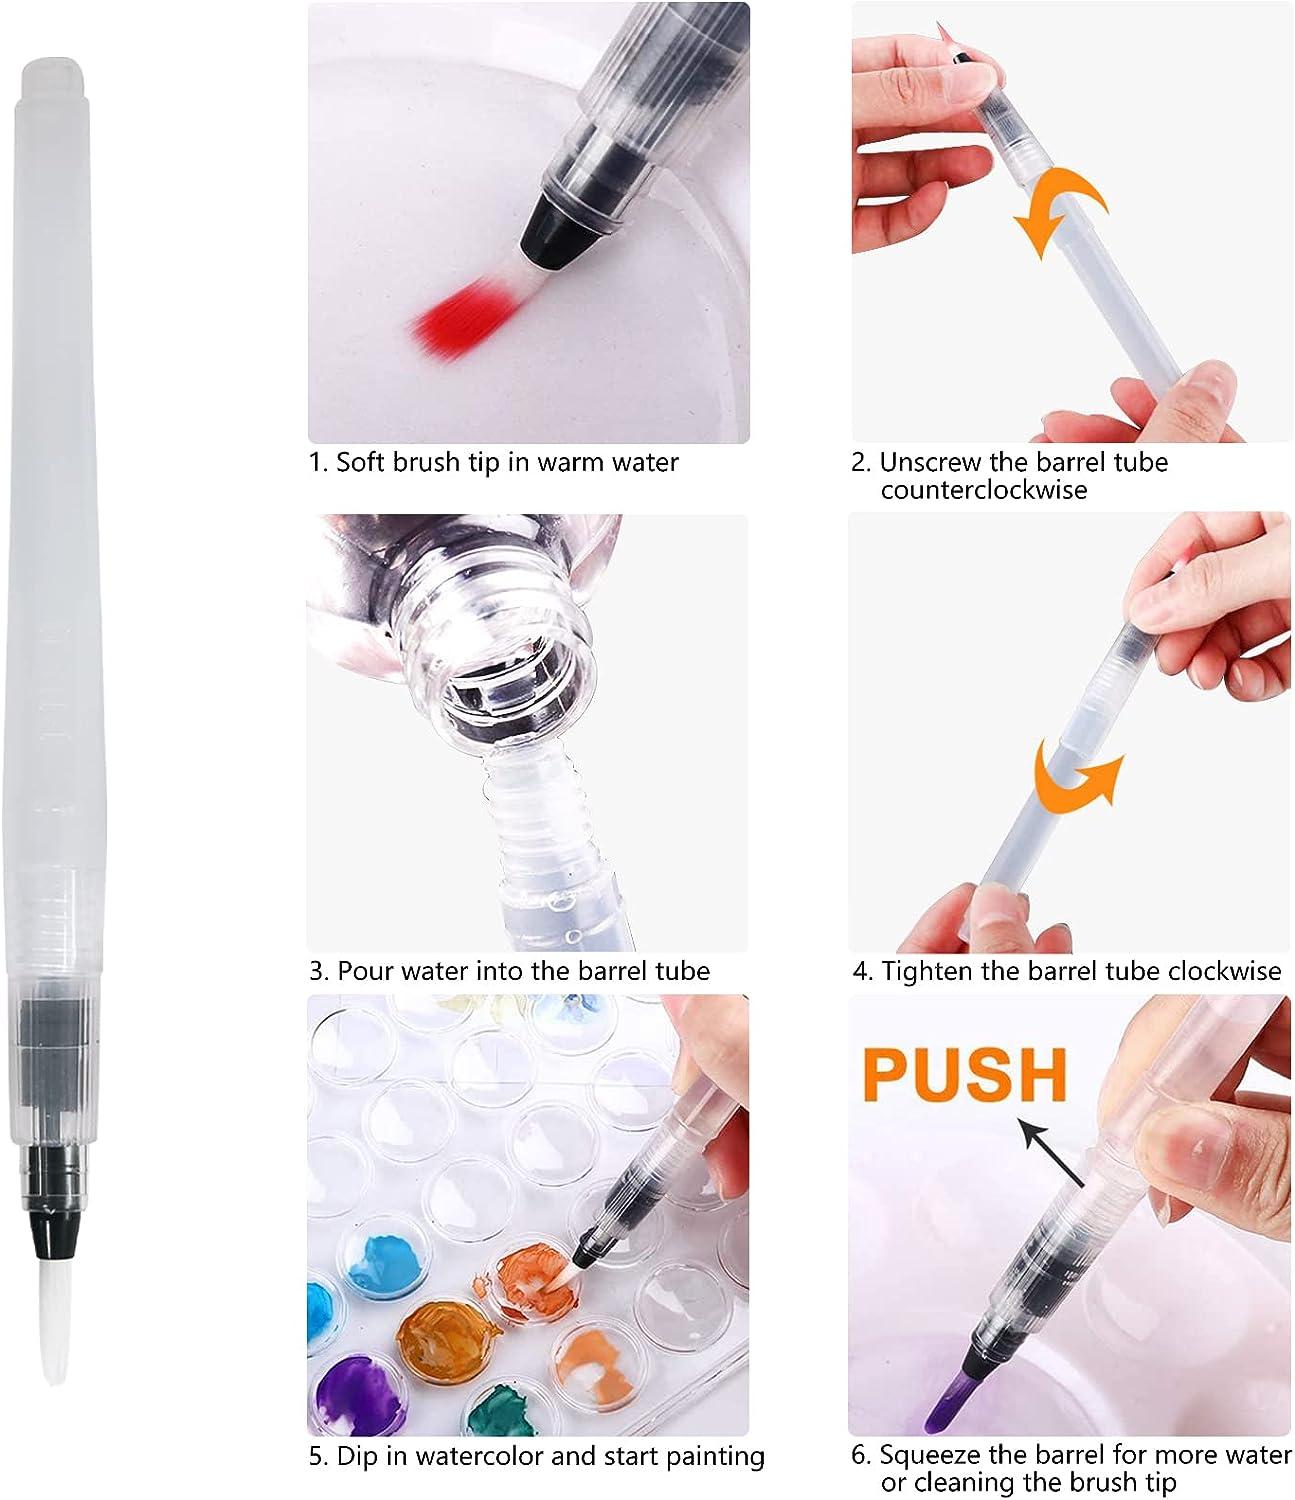 Water Brush Pens –